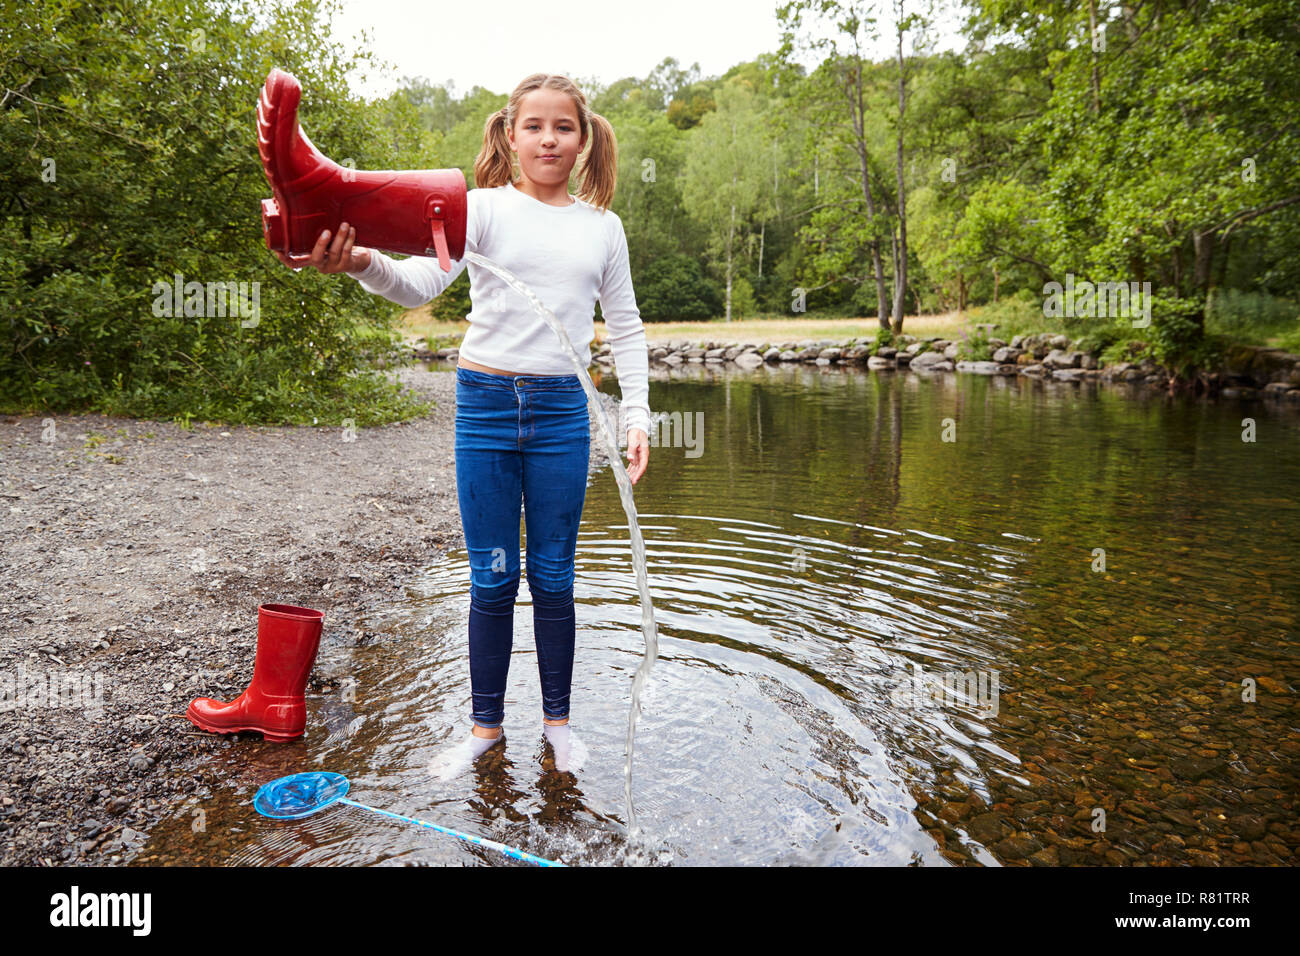 Junges Mädchen stehen in einem Fluss Socken tragen gießt Wasser aus ihrem roten Wellington boot Stockfoto